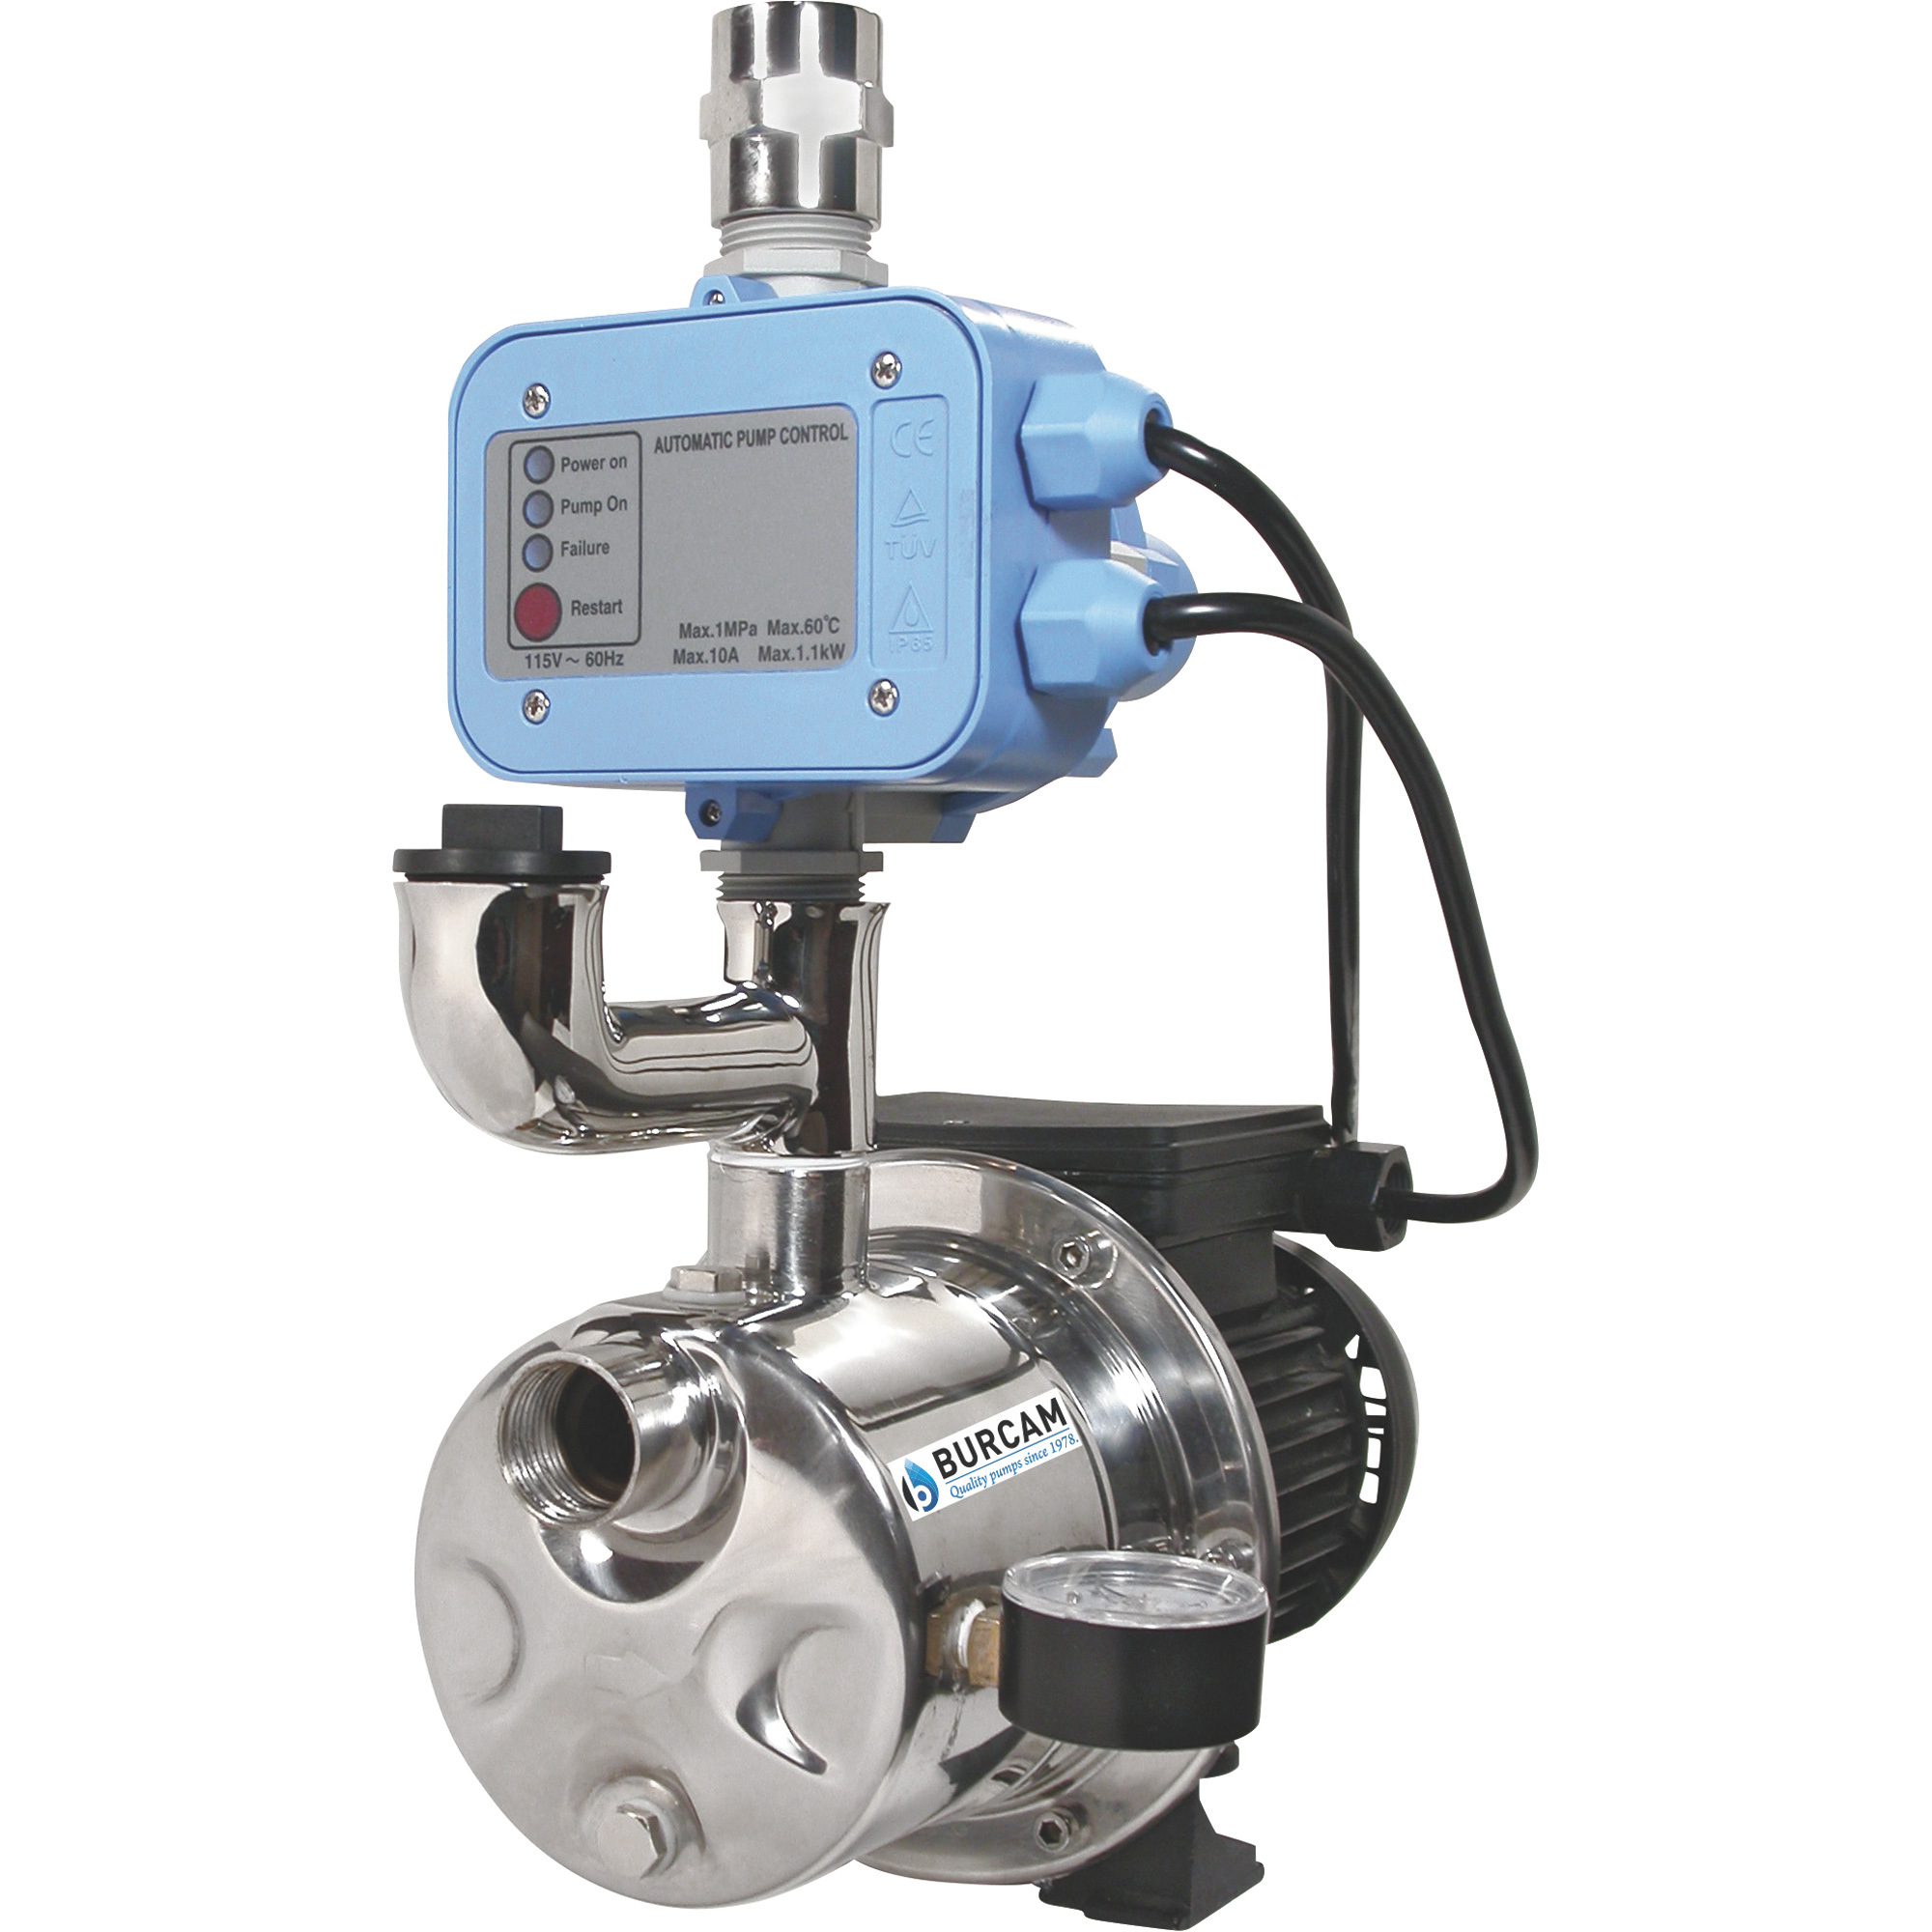 BurCam Pressure Booster/Shallow Well Jet Water Pump â 900 GPH, 3/4 HP, 1Inch Ports, Model 506532SS